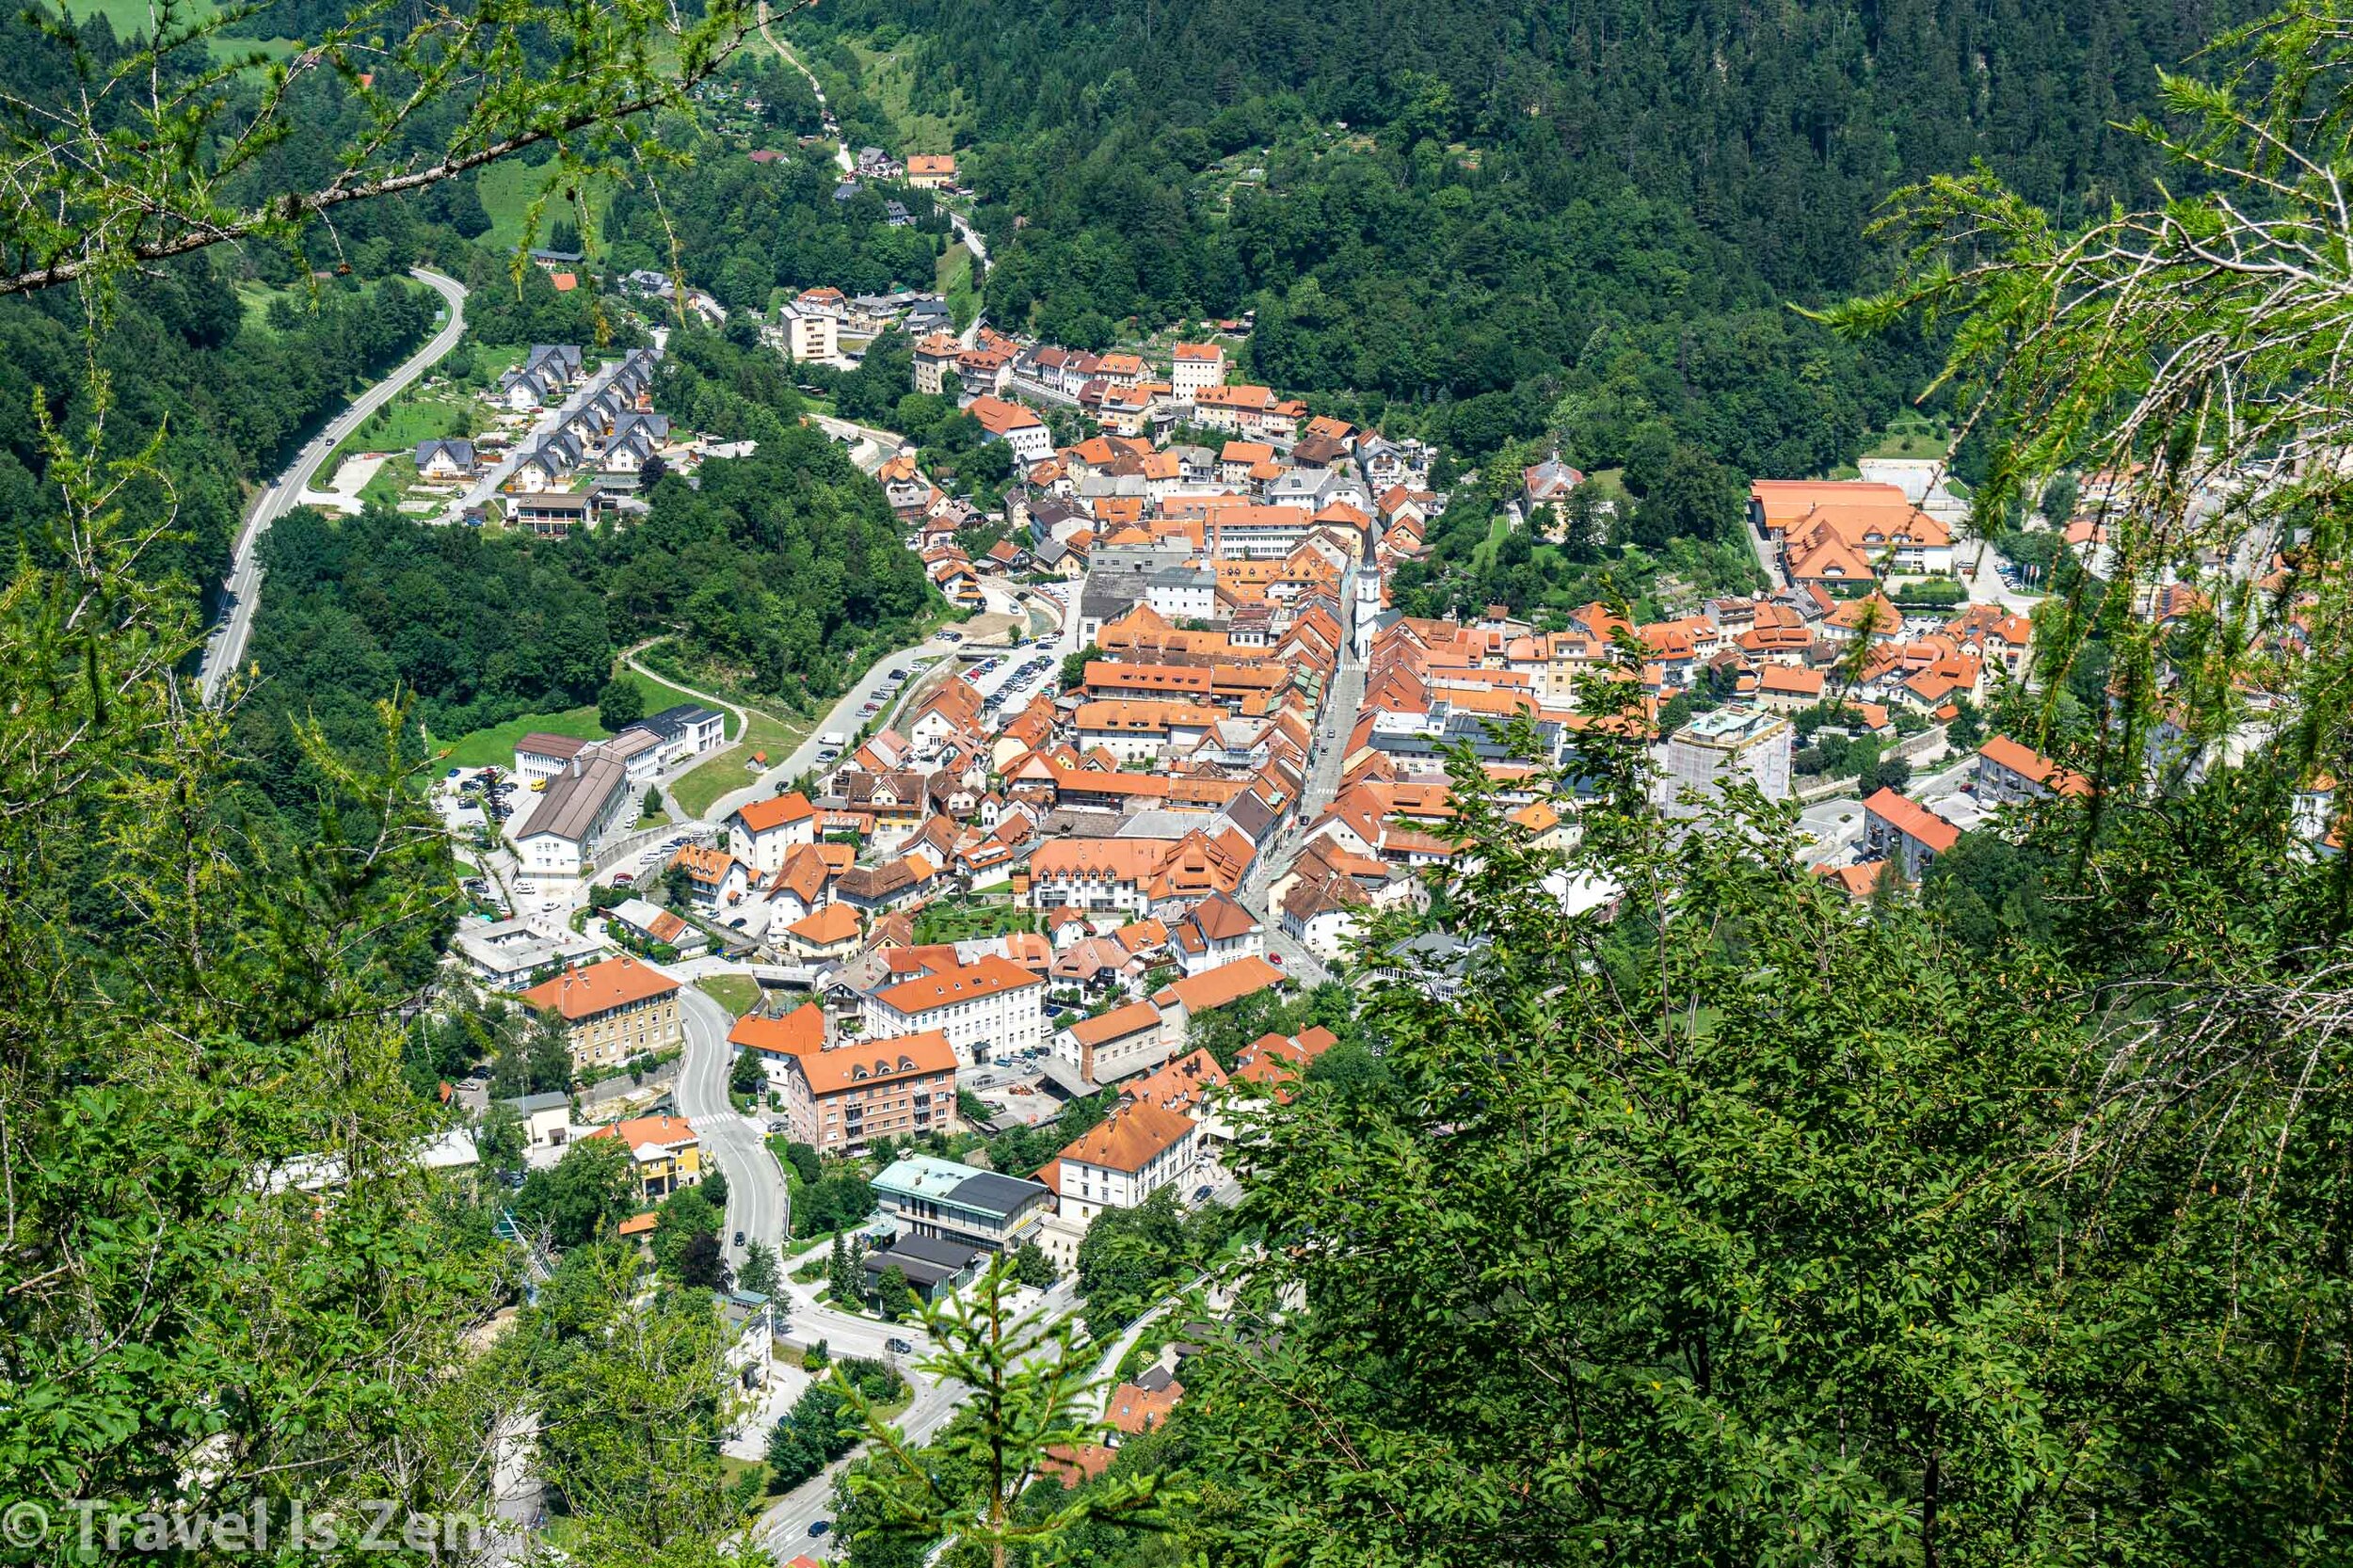 town of Tržič